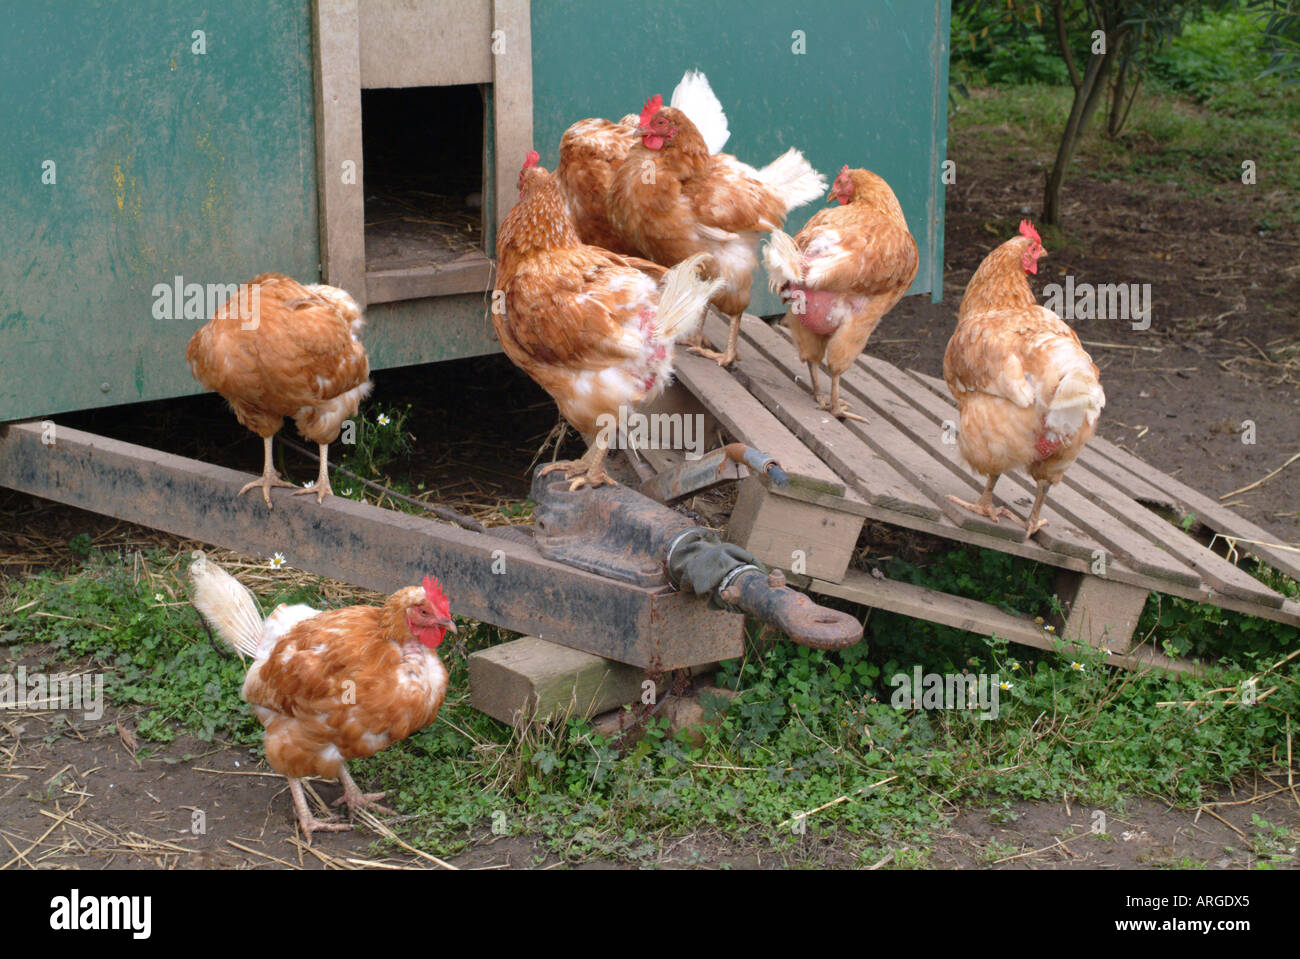 Intervalo libre de pollos en una granja orgánica, en el Reino Unido. Foto de stock